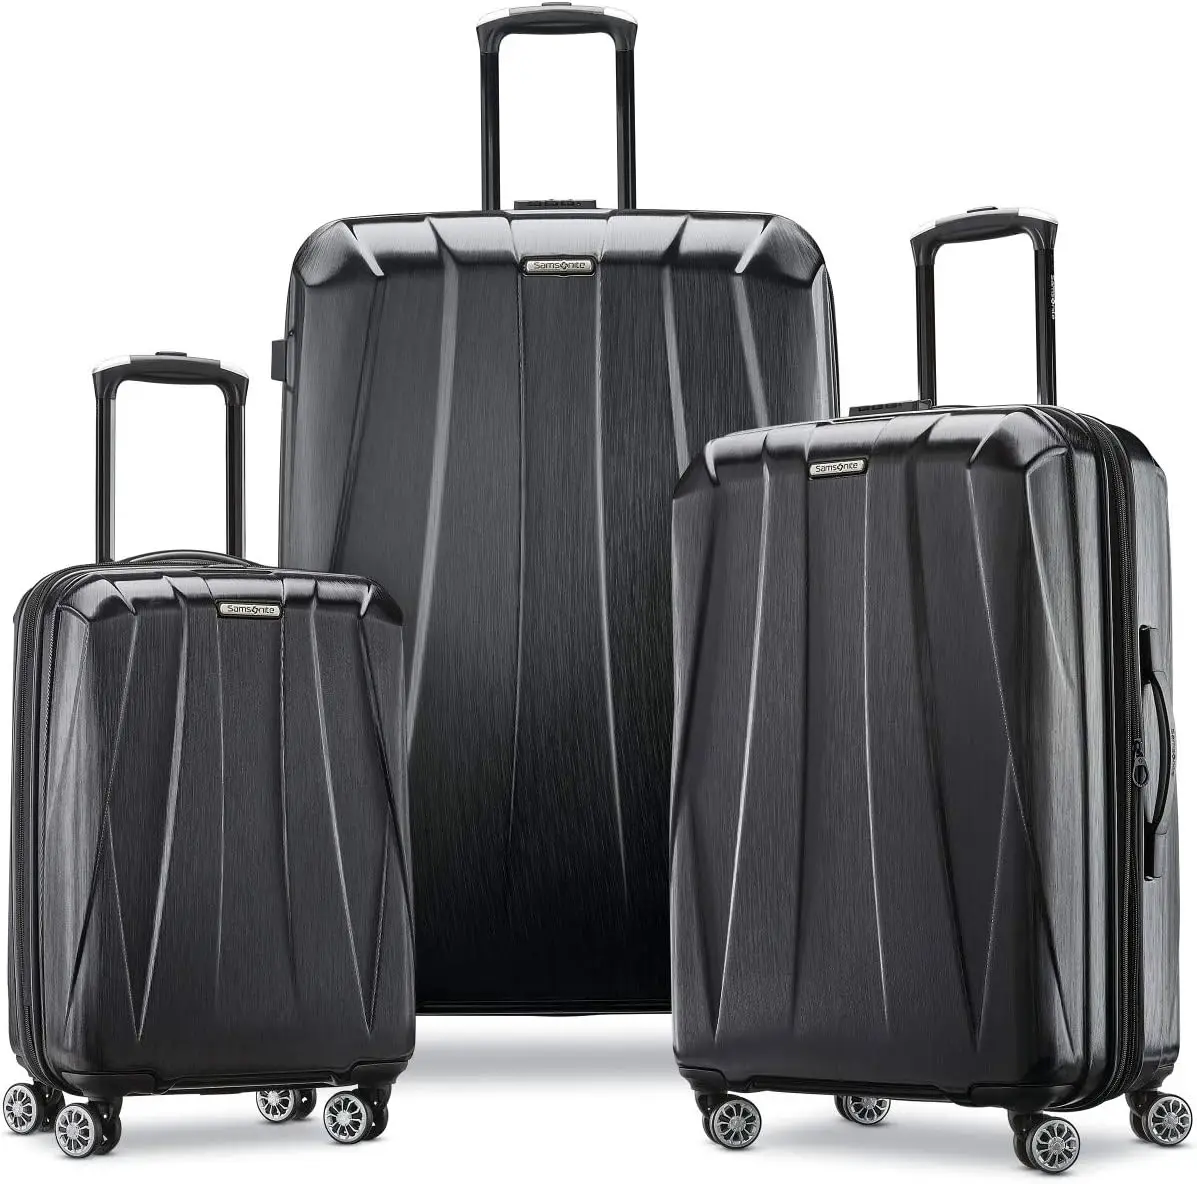 

Samsonite центральный 2 жесткий расширяемый чемодан с шпиннерами, черный, набор из 3 частей (20/24/28)